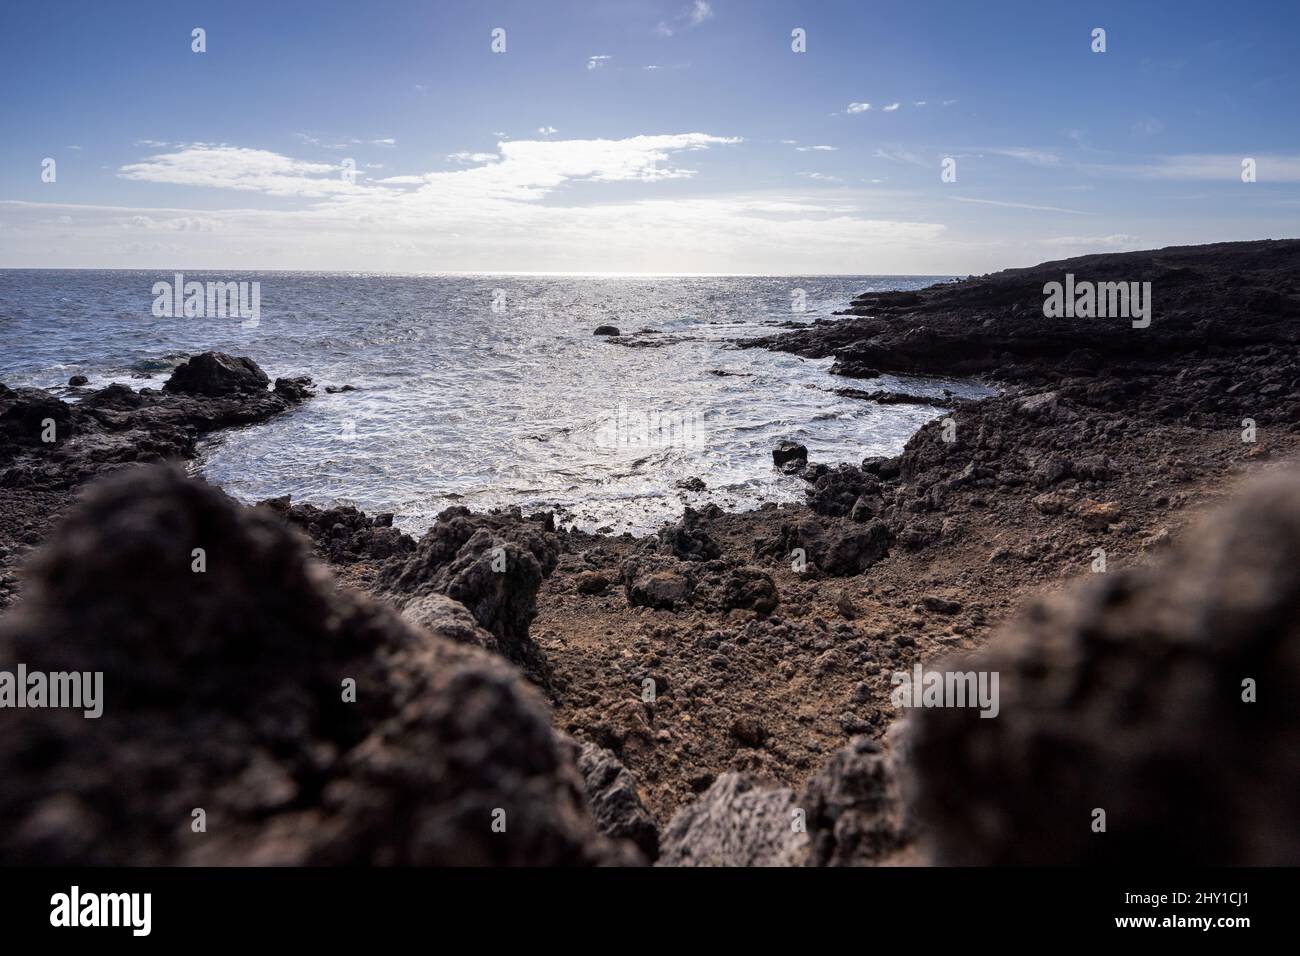 Landschaft von felsigen Ufer mit Felsbrocken der vulkanischen Insel Teneriffa, die am sonnigen Tag vom Atlantischen Ozean gewaschen wurden Stockfoto